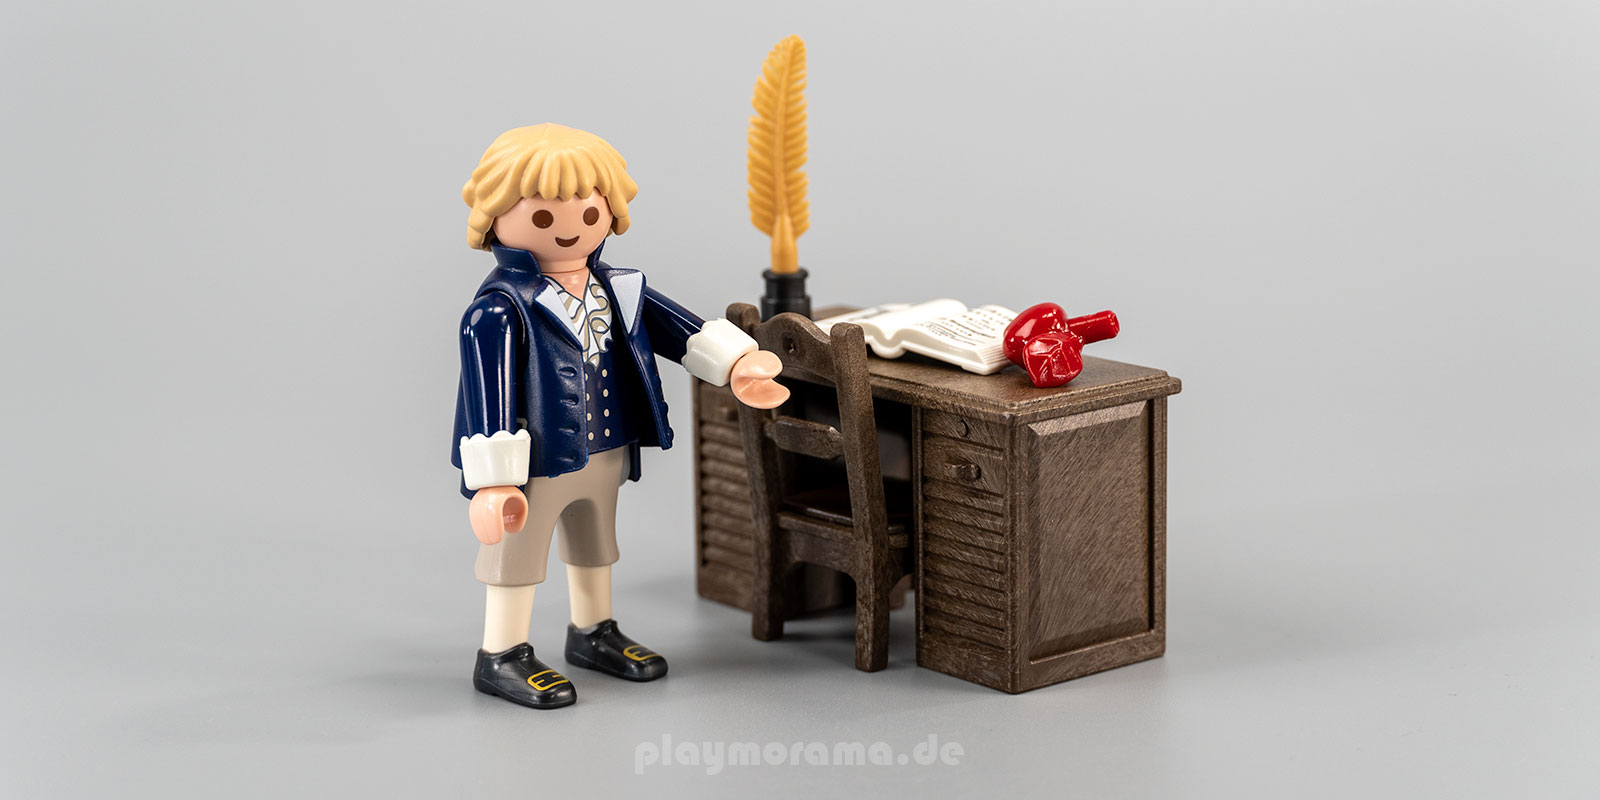 Playmobil 70688 Johann Christoph Friedrich Schiller